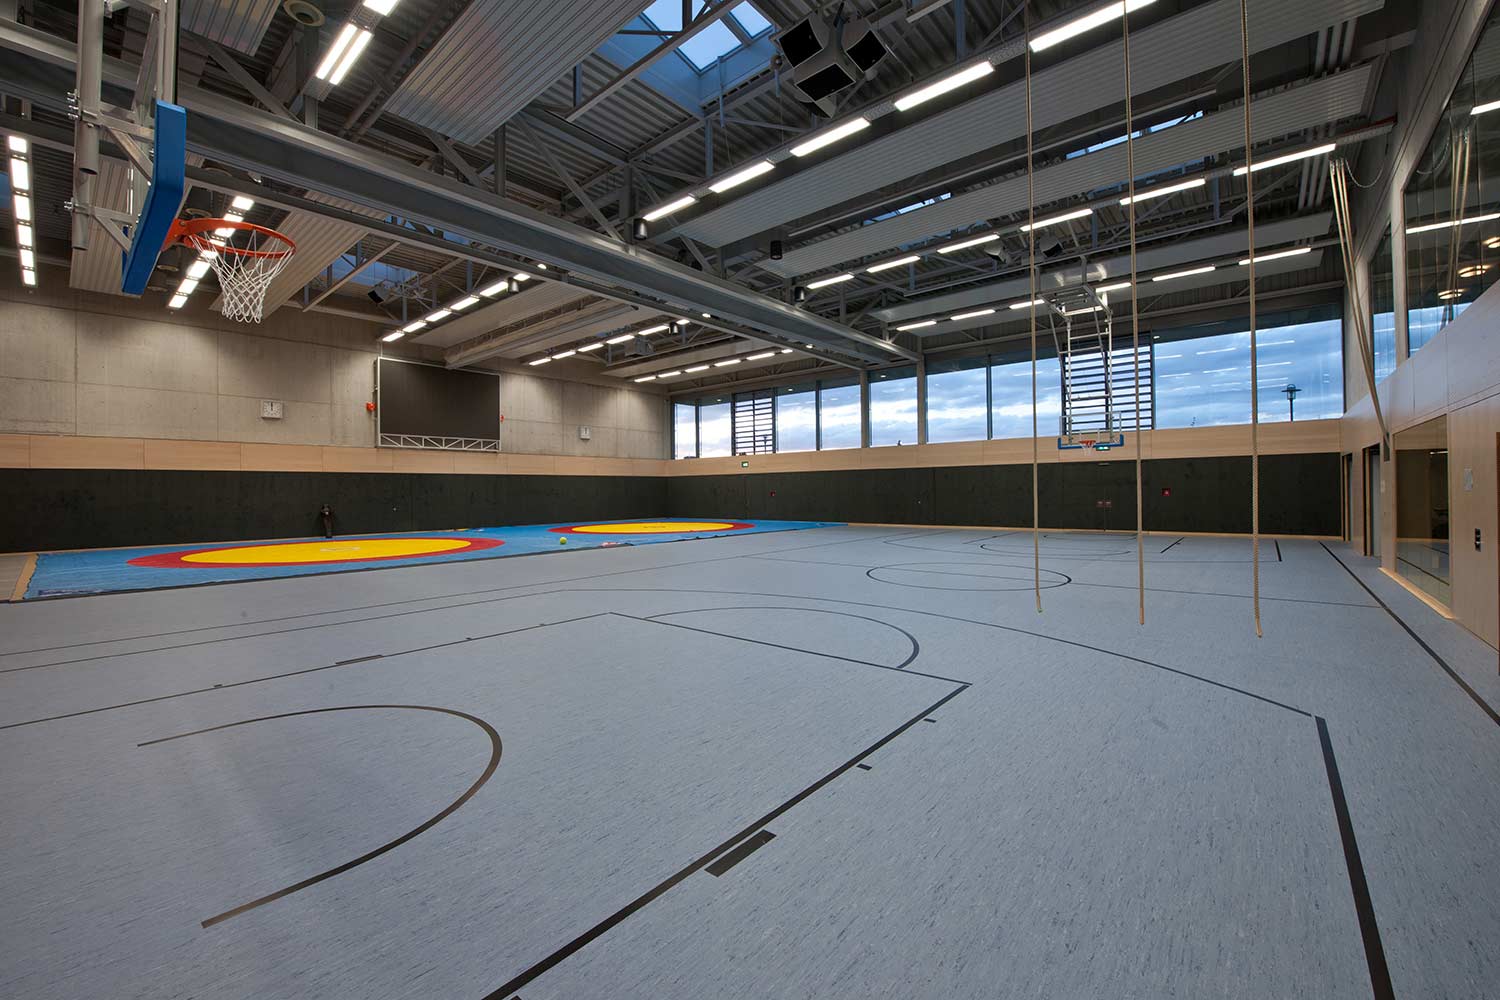 ssp Planung - Sportzentrum Unterföhring neubau einer kunstturner- und ringerhalle an eine bestehende sporthalle